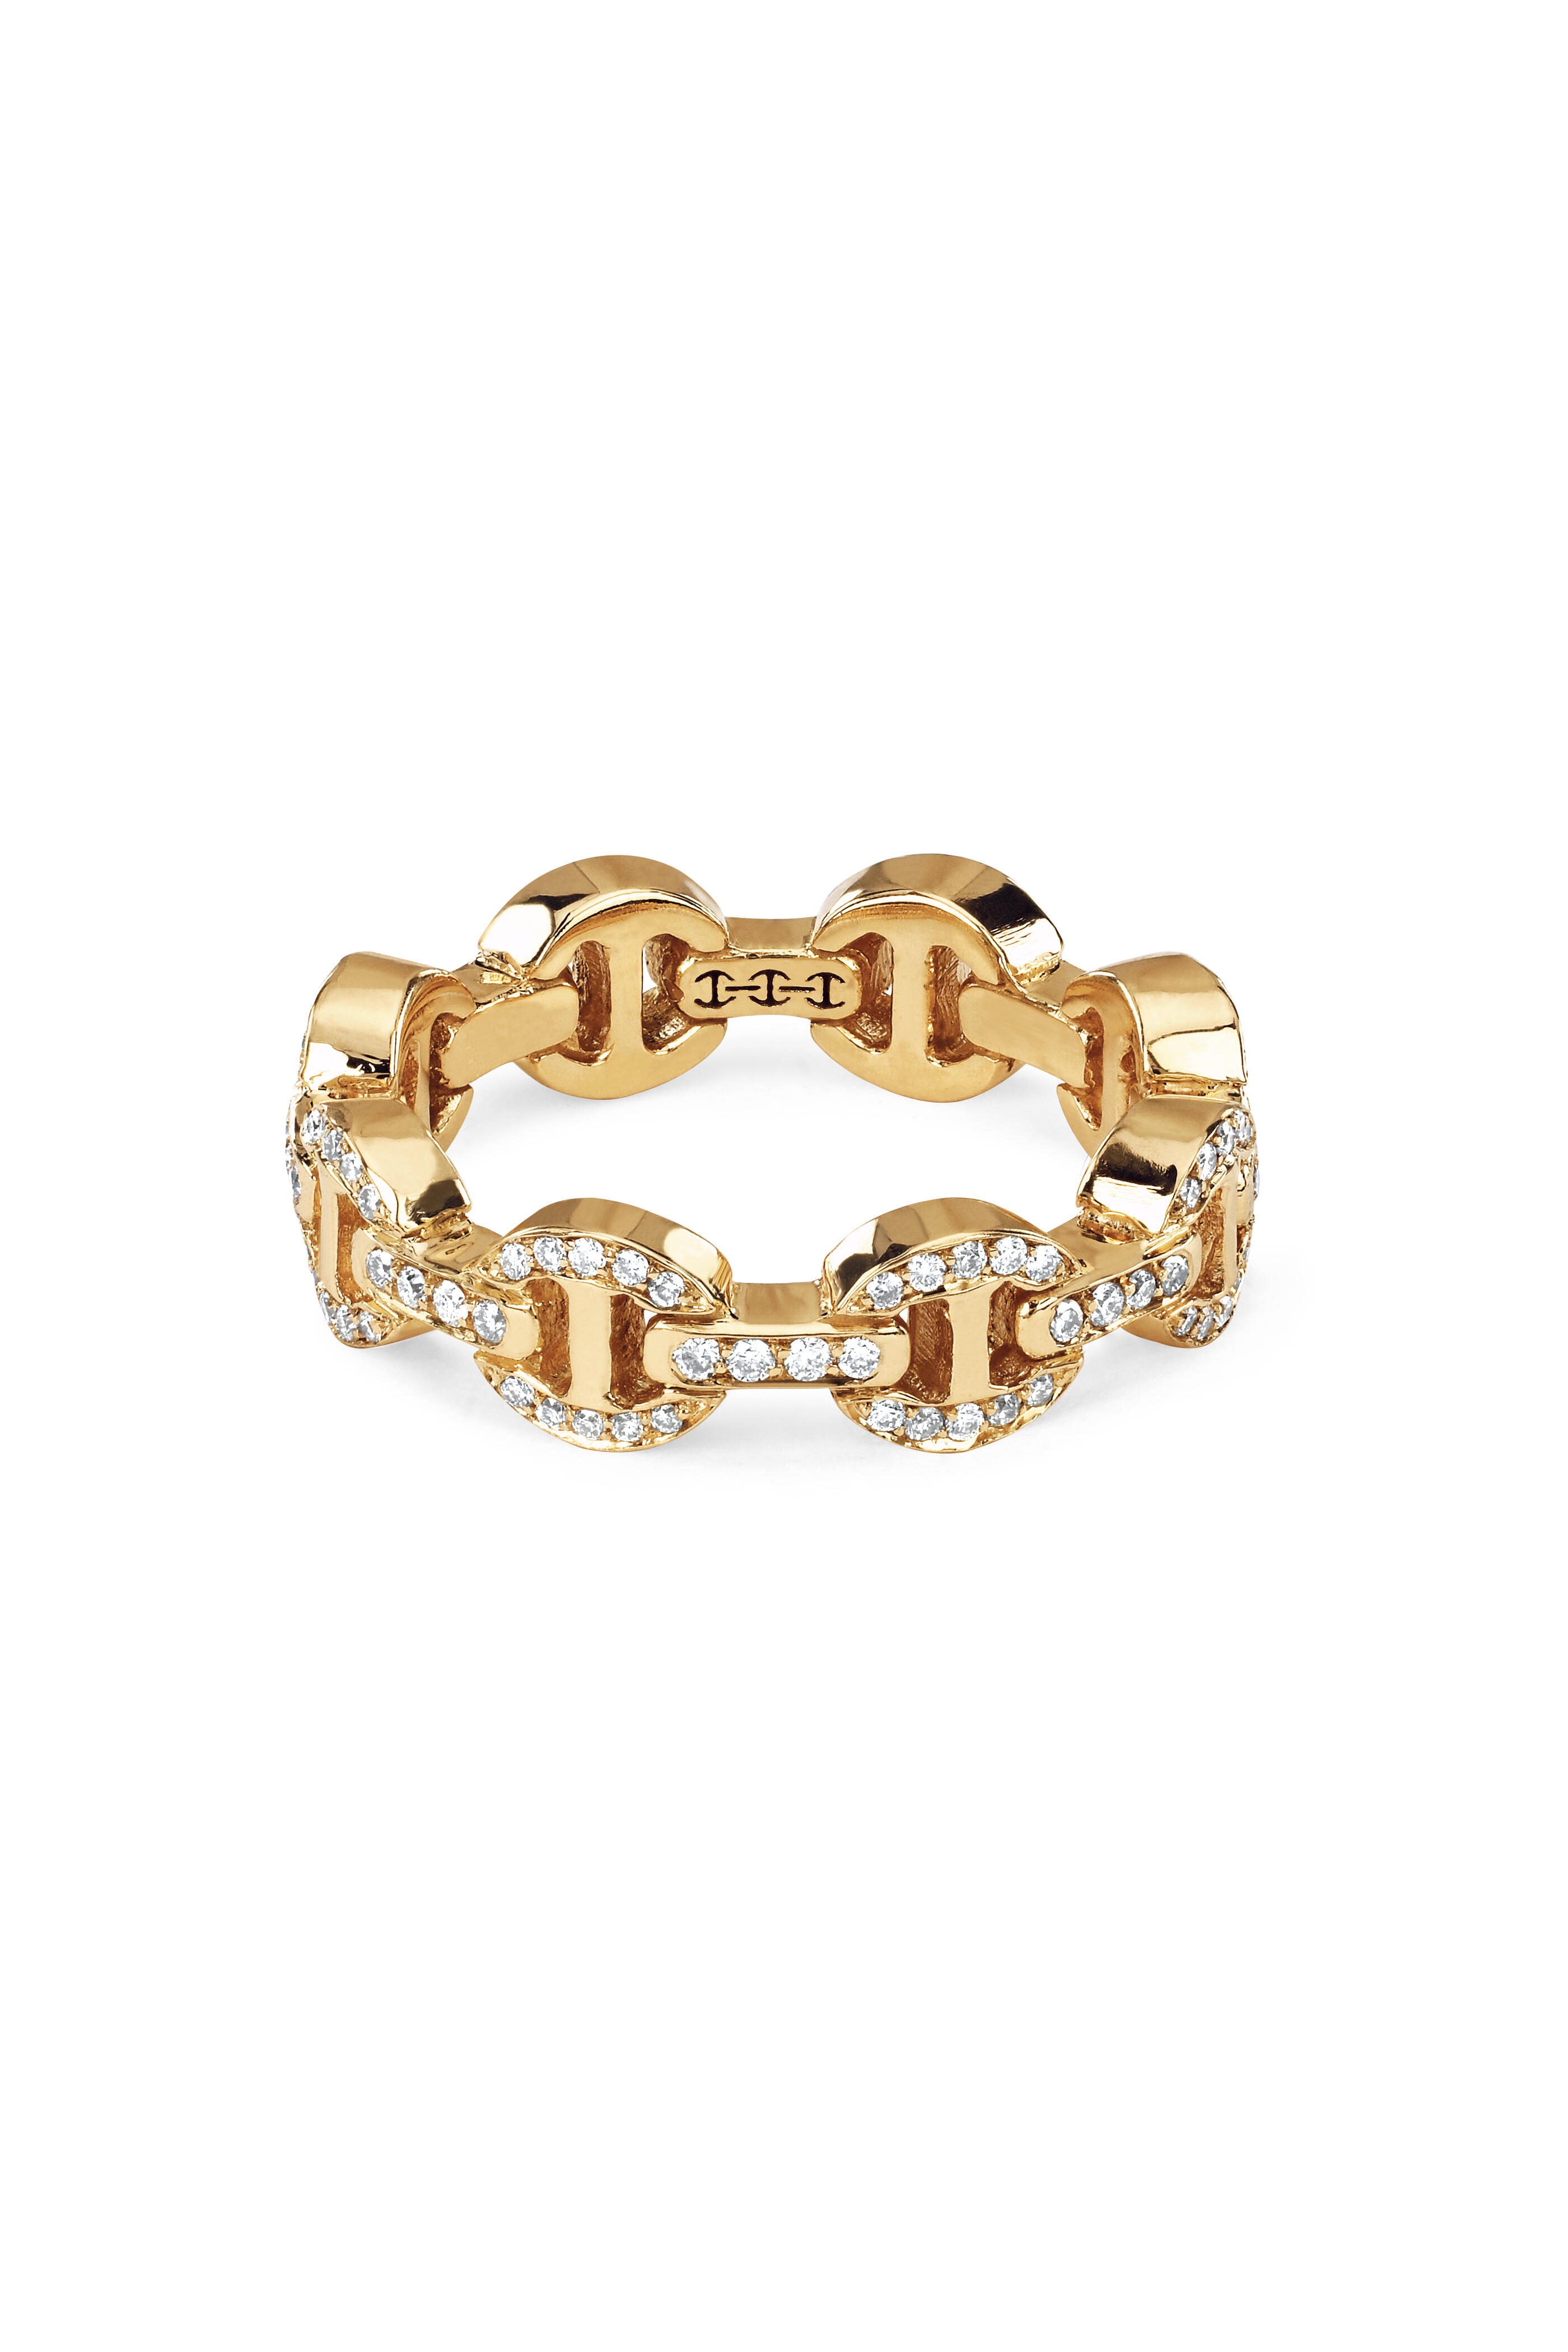 Hoorsenbuhs - 18K Yellow Gold Dame Diamond Tri-Link Ring